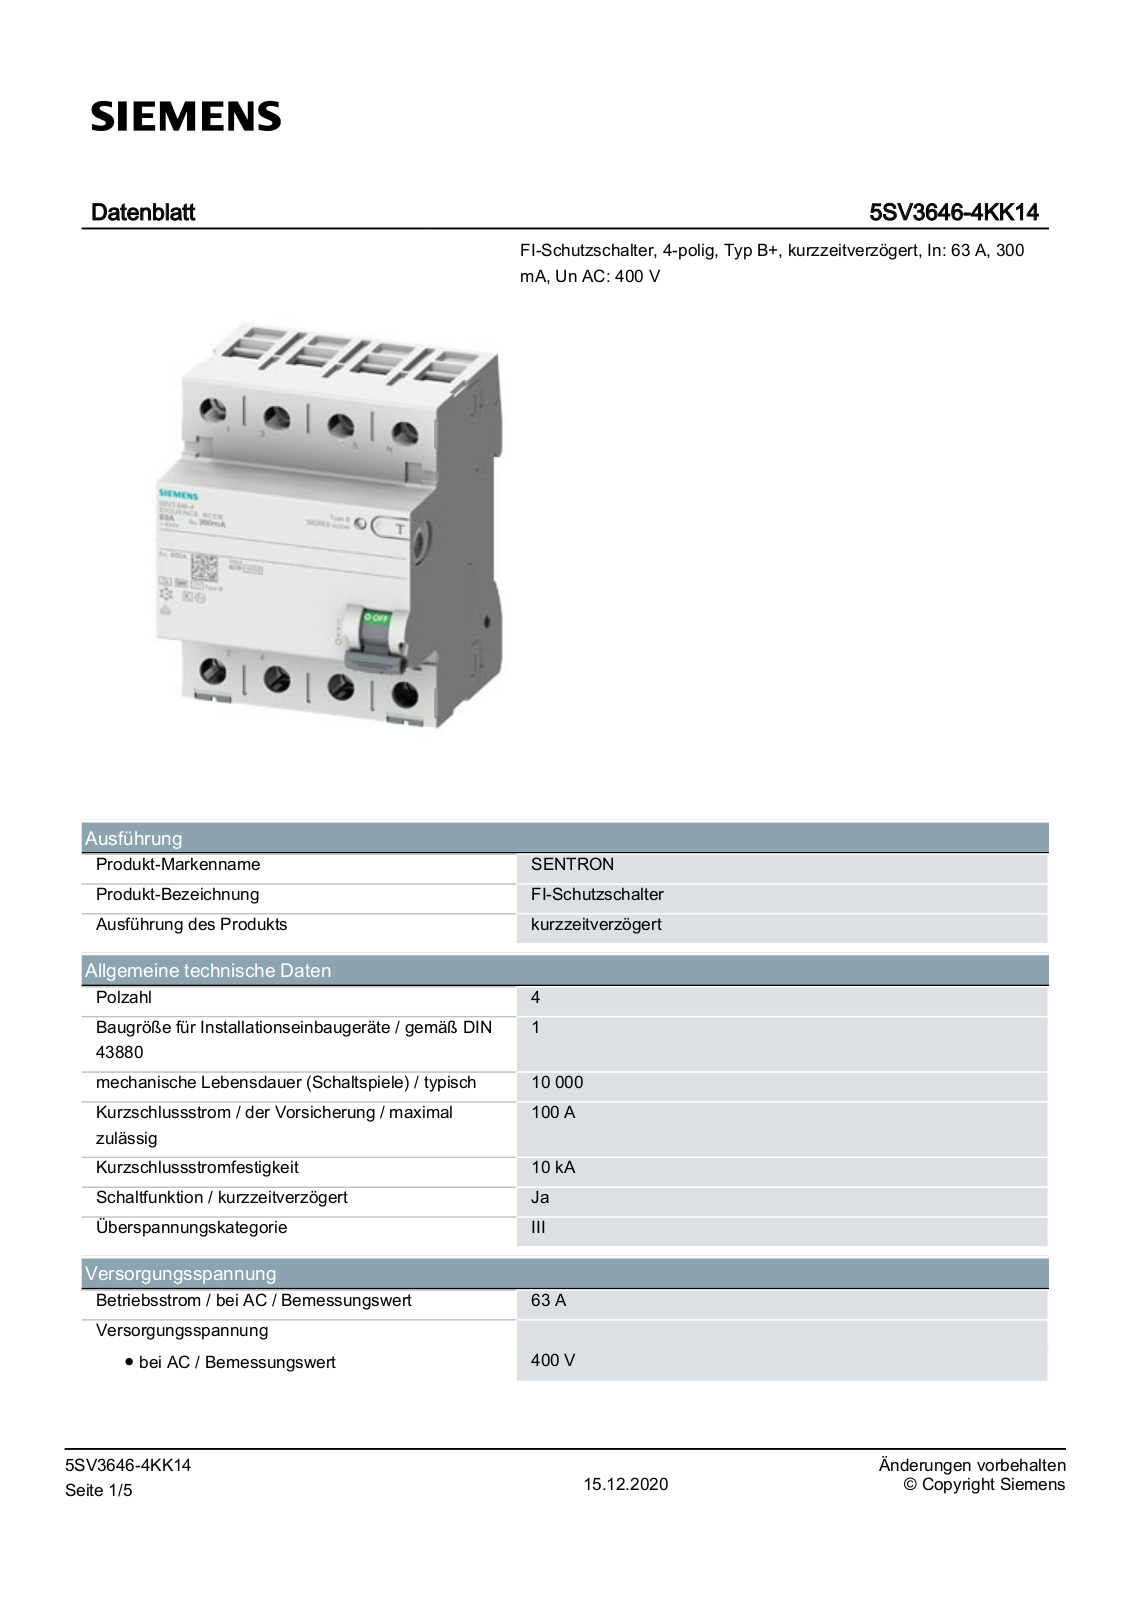 Siemens 5SV3646-4KK14 Datenblatt